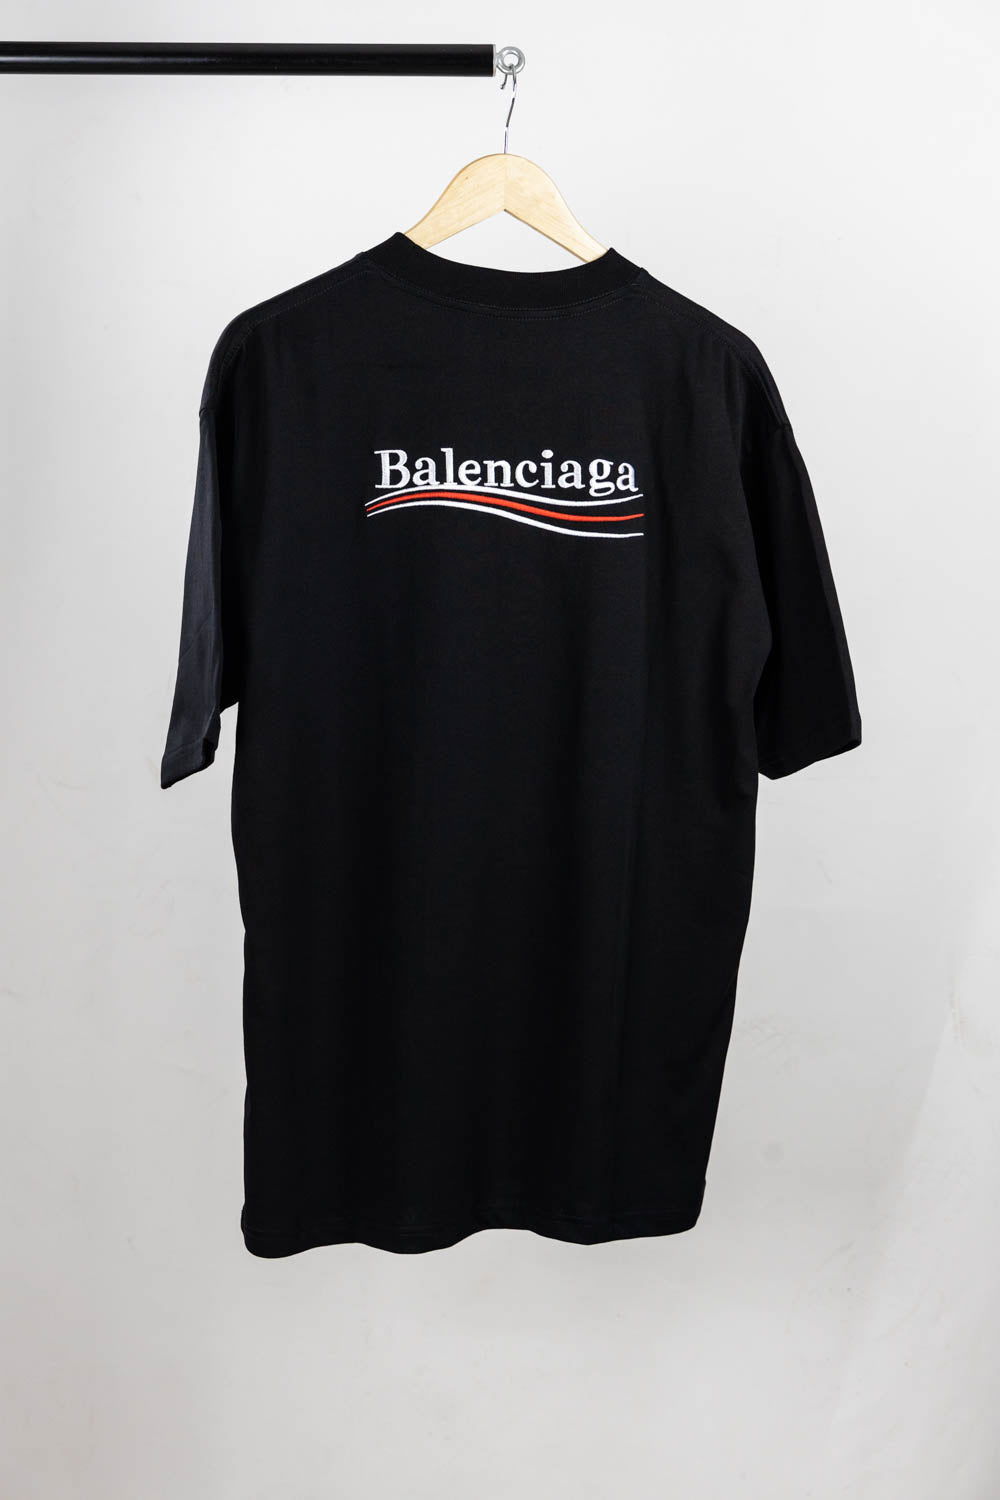 Balenciaga embroidery logo T-shirt